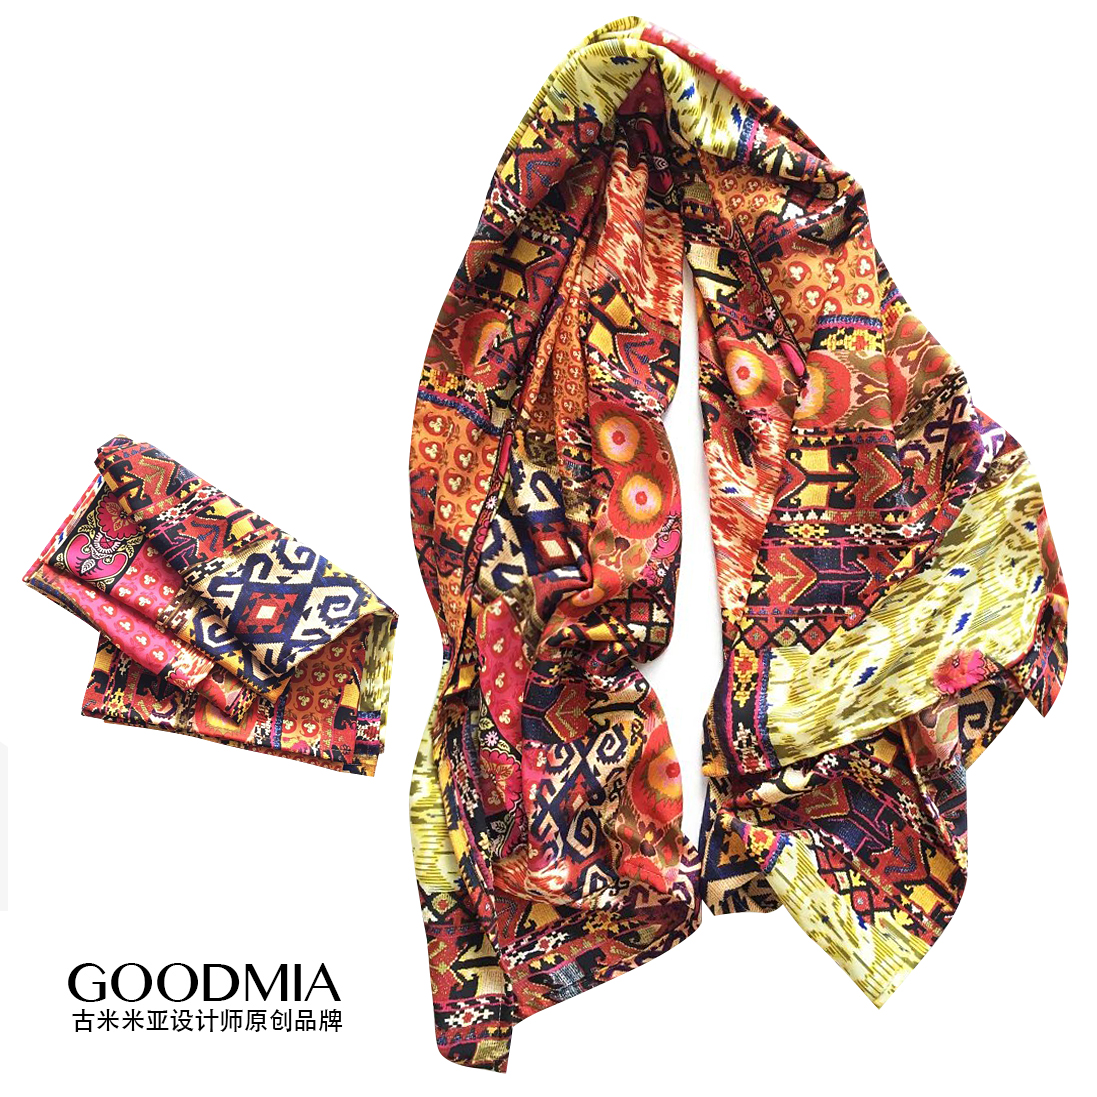 古米米亚品牌新款波西米亚民族部落超大围巾丝巾防晒旅行必备